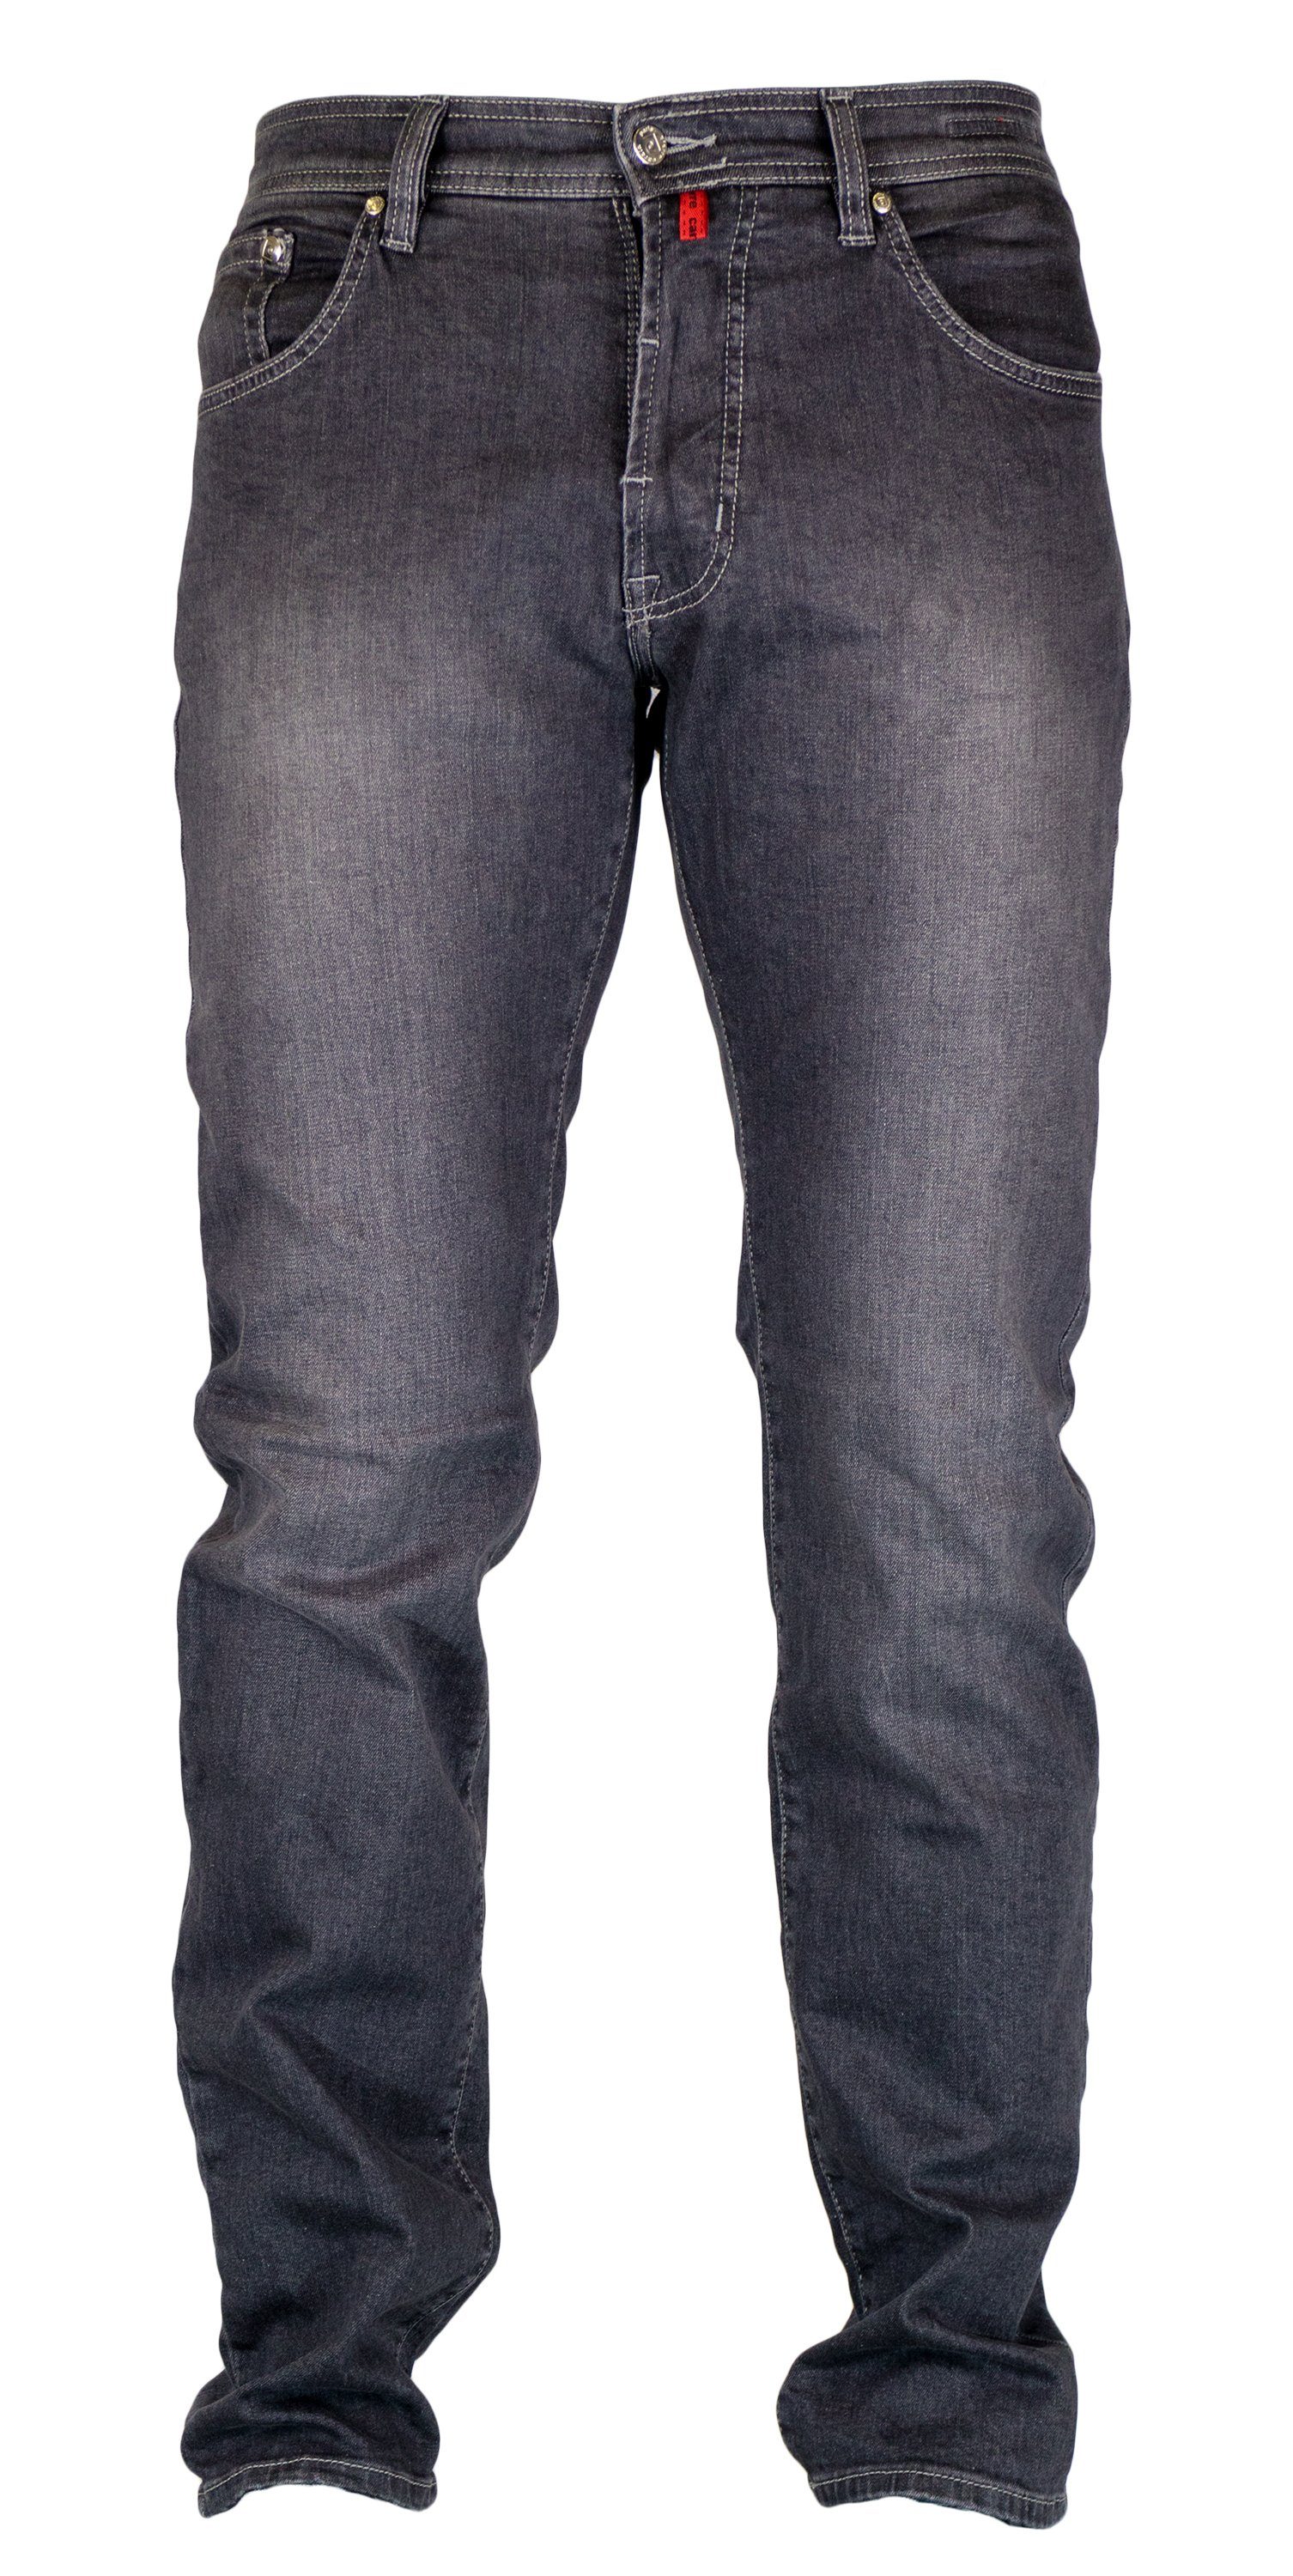 Pierre Cardin 5-Pocket-Jeans PIERRE CARDIN 31961 - DENIM used 7350.92 mid EDITION DEAUVILLE grey